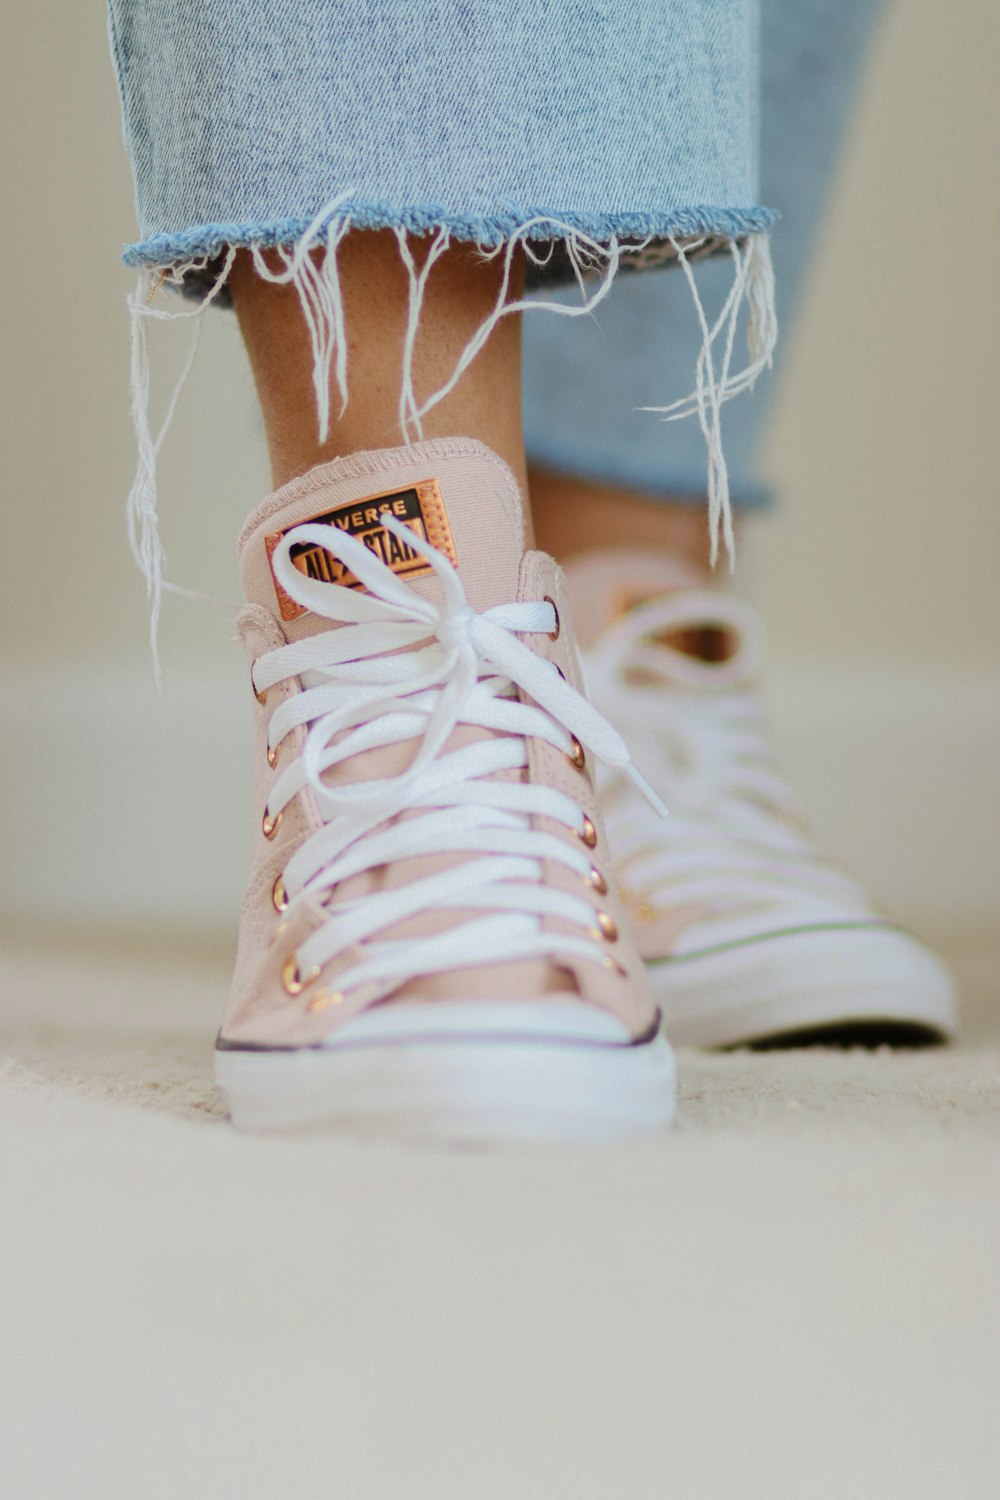 Un primer plano de los pies de una persona con zapatillas rosas y blancas